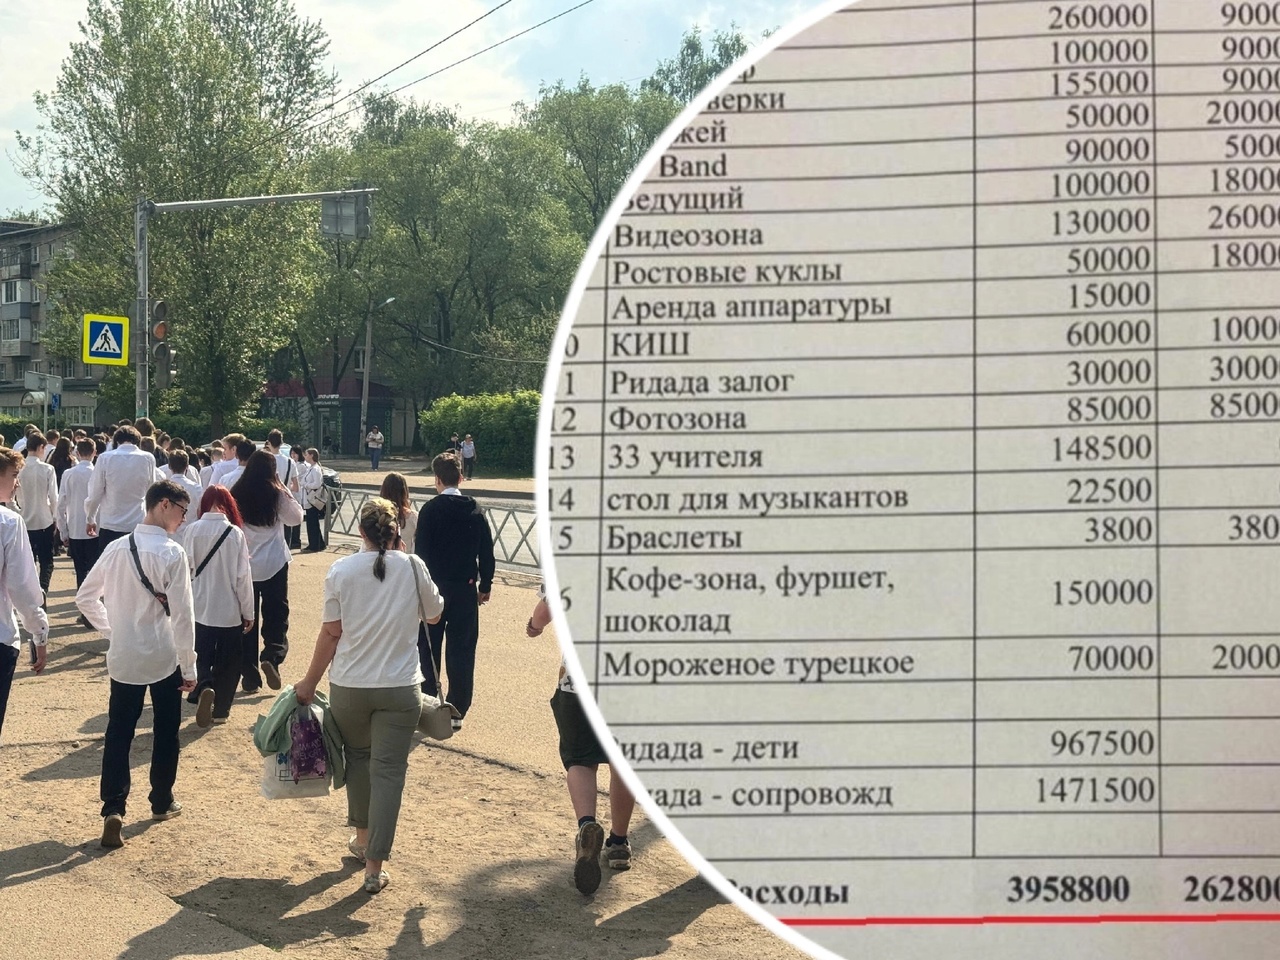 "Киркорова забыли пригласить": ярославцы о выпускном за 4 миллиона.  